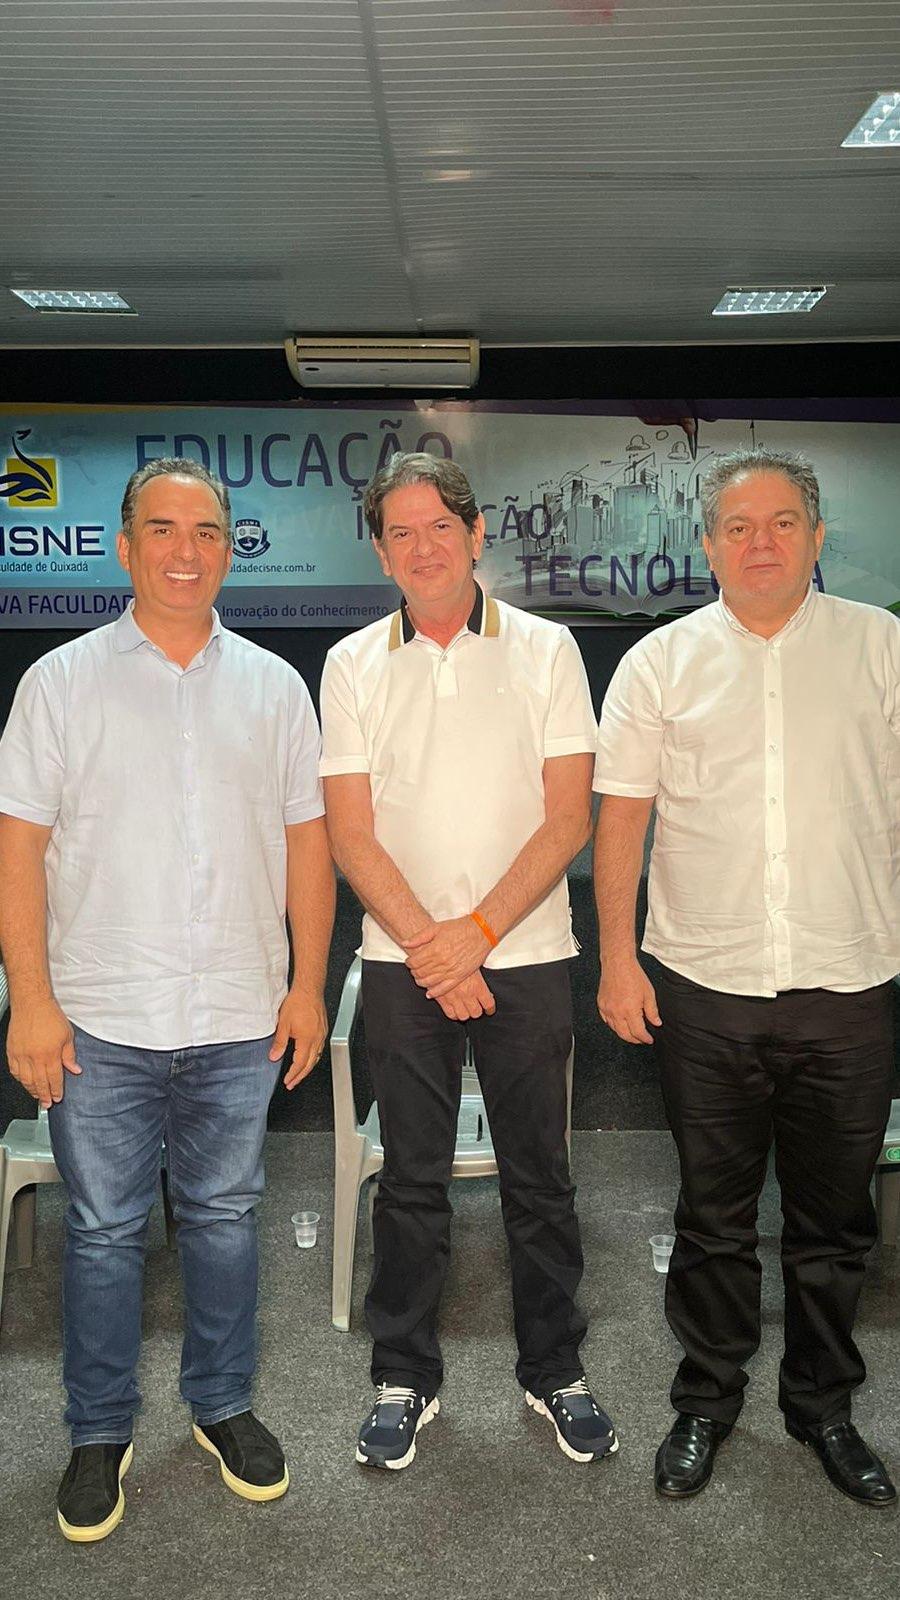 Em ordem: prefeito Ricardo Silveira, senador Cid Gomes e deputado estadual Osmar Baquit.